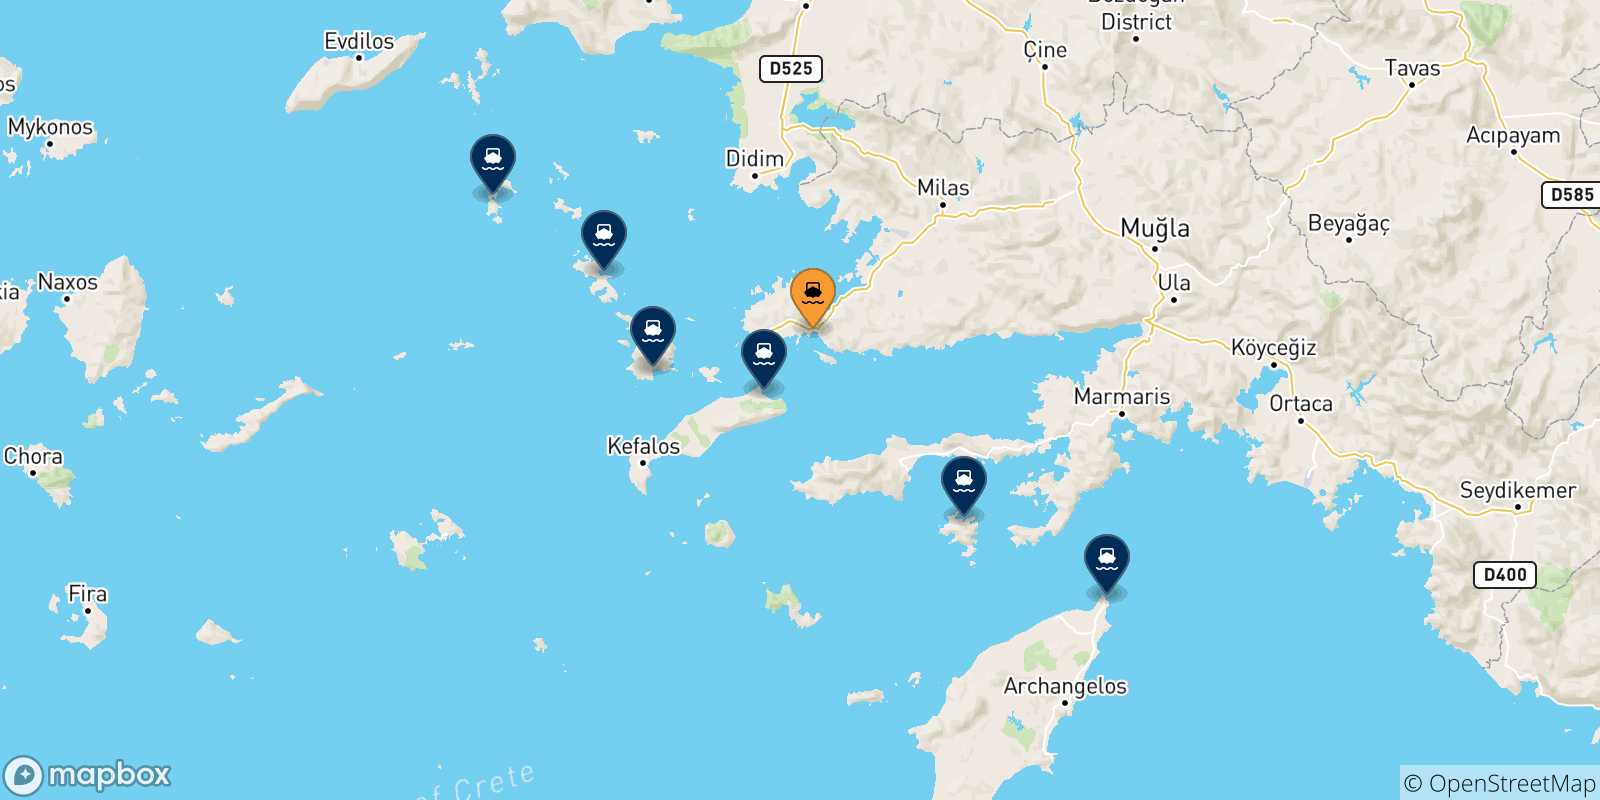 Mappa delle possibili rotte tra Bodrum e la Grecia